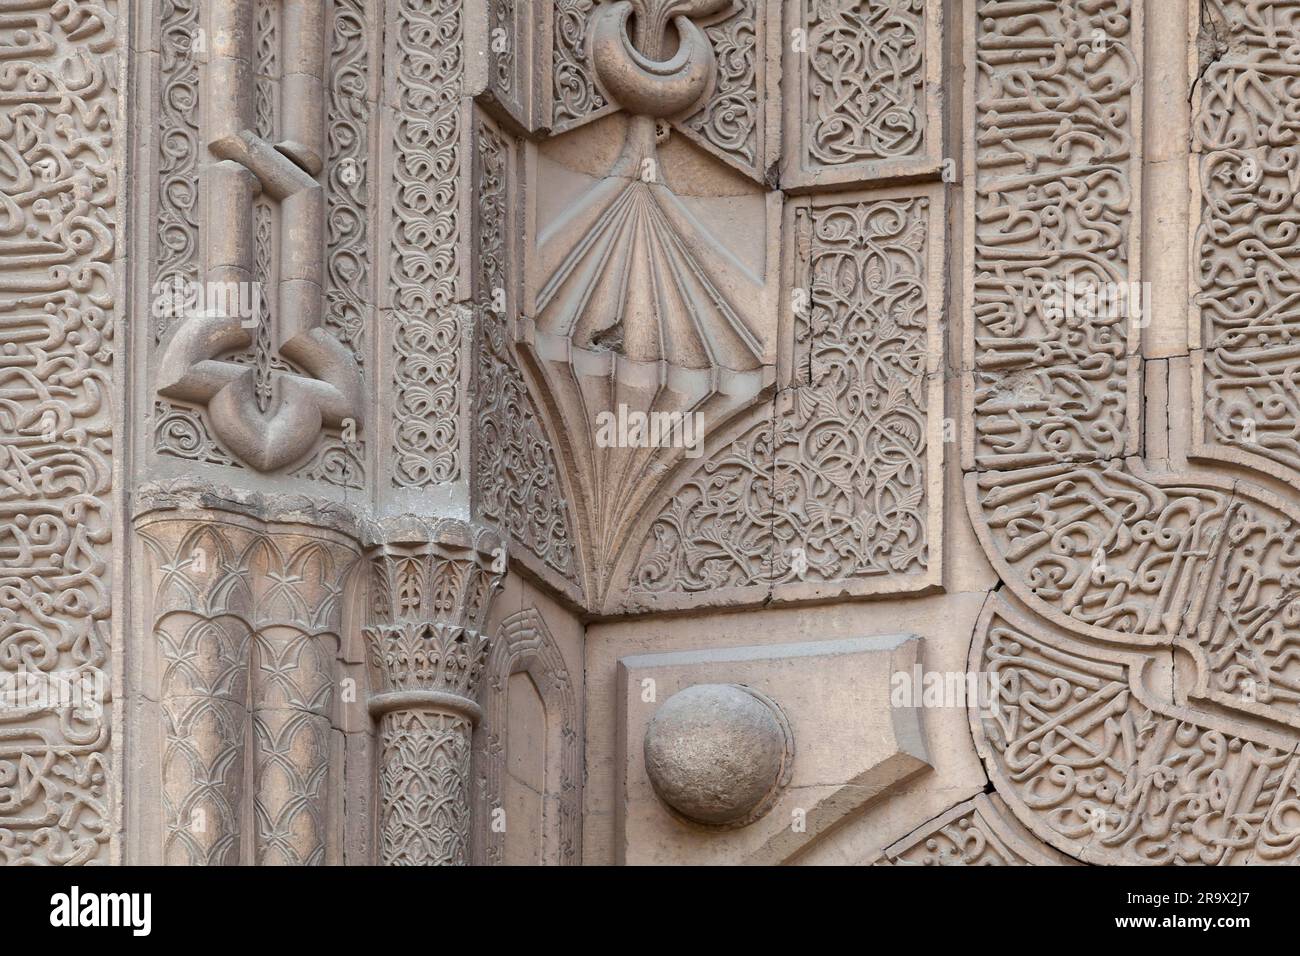 Artistici scalpellini, Ince Minare Medresesi, Museo di oggetti in legno e Stonemasonry, Konya, Turchia Foto Stock